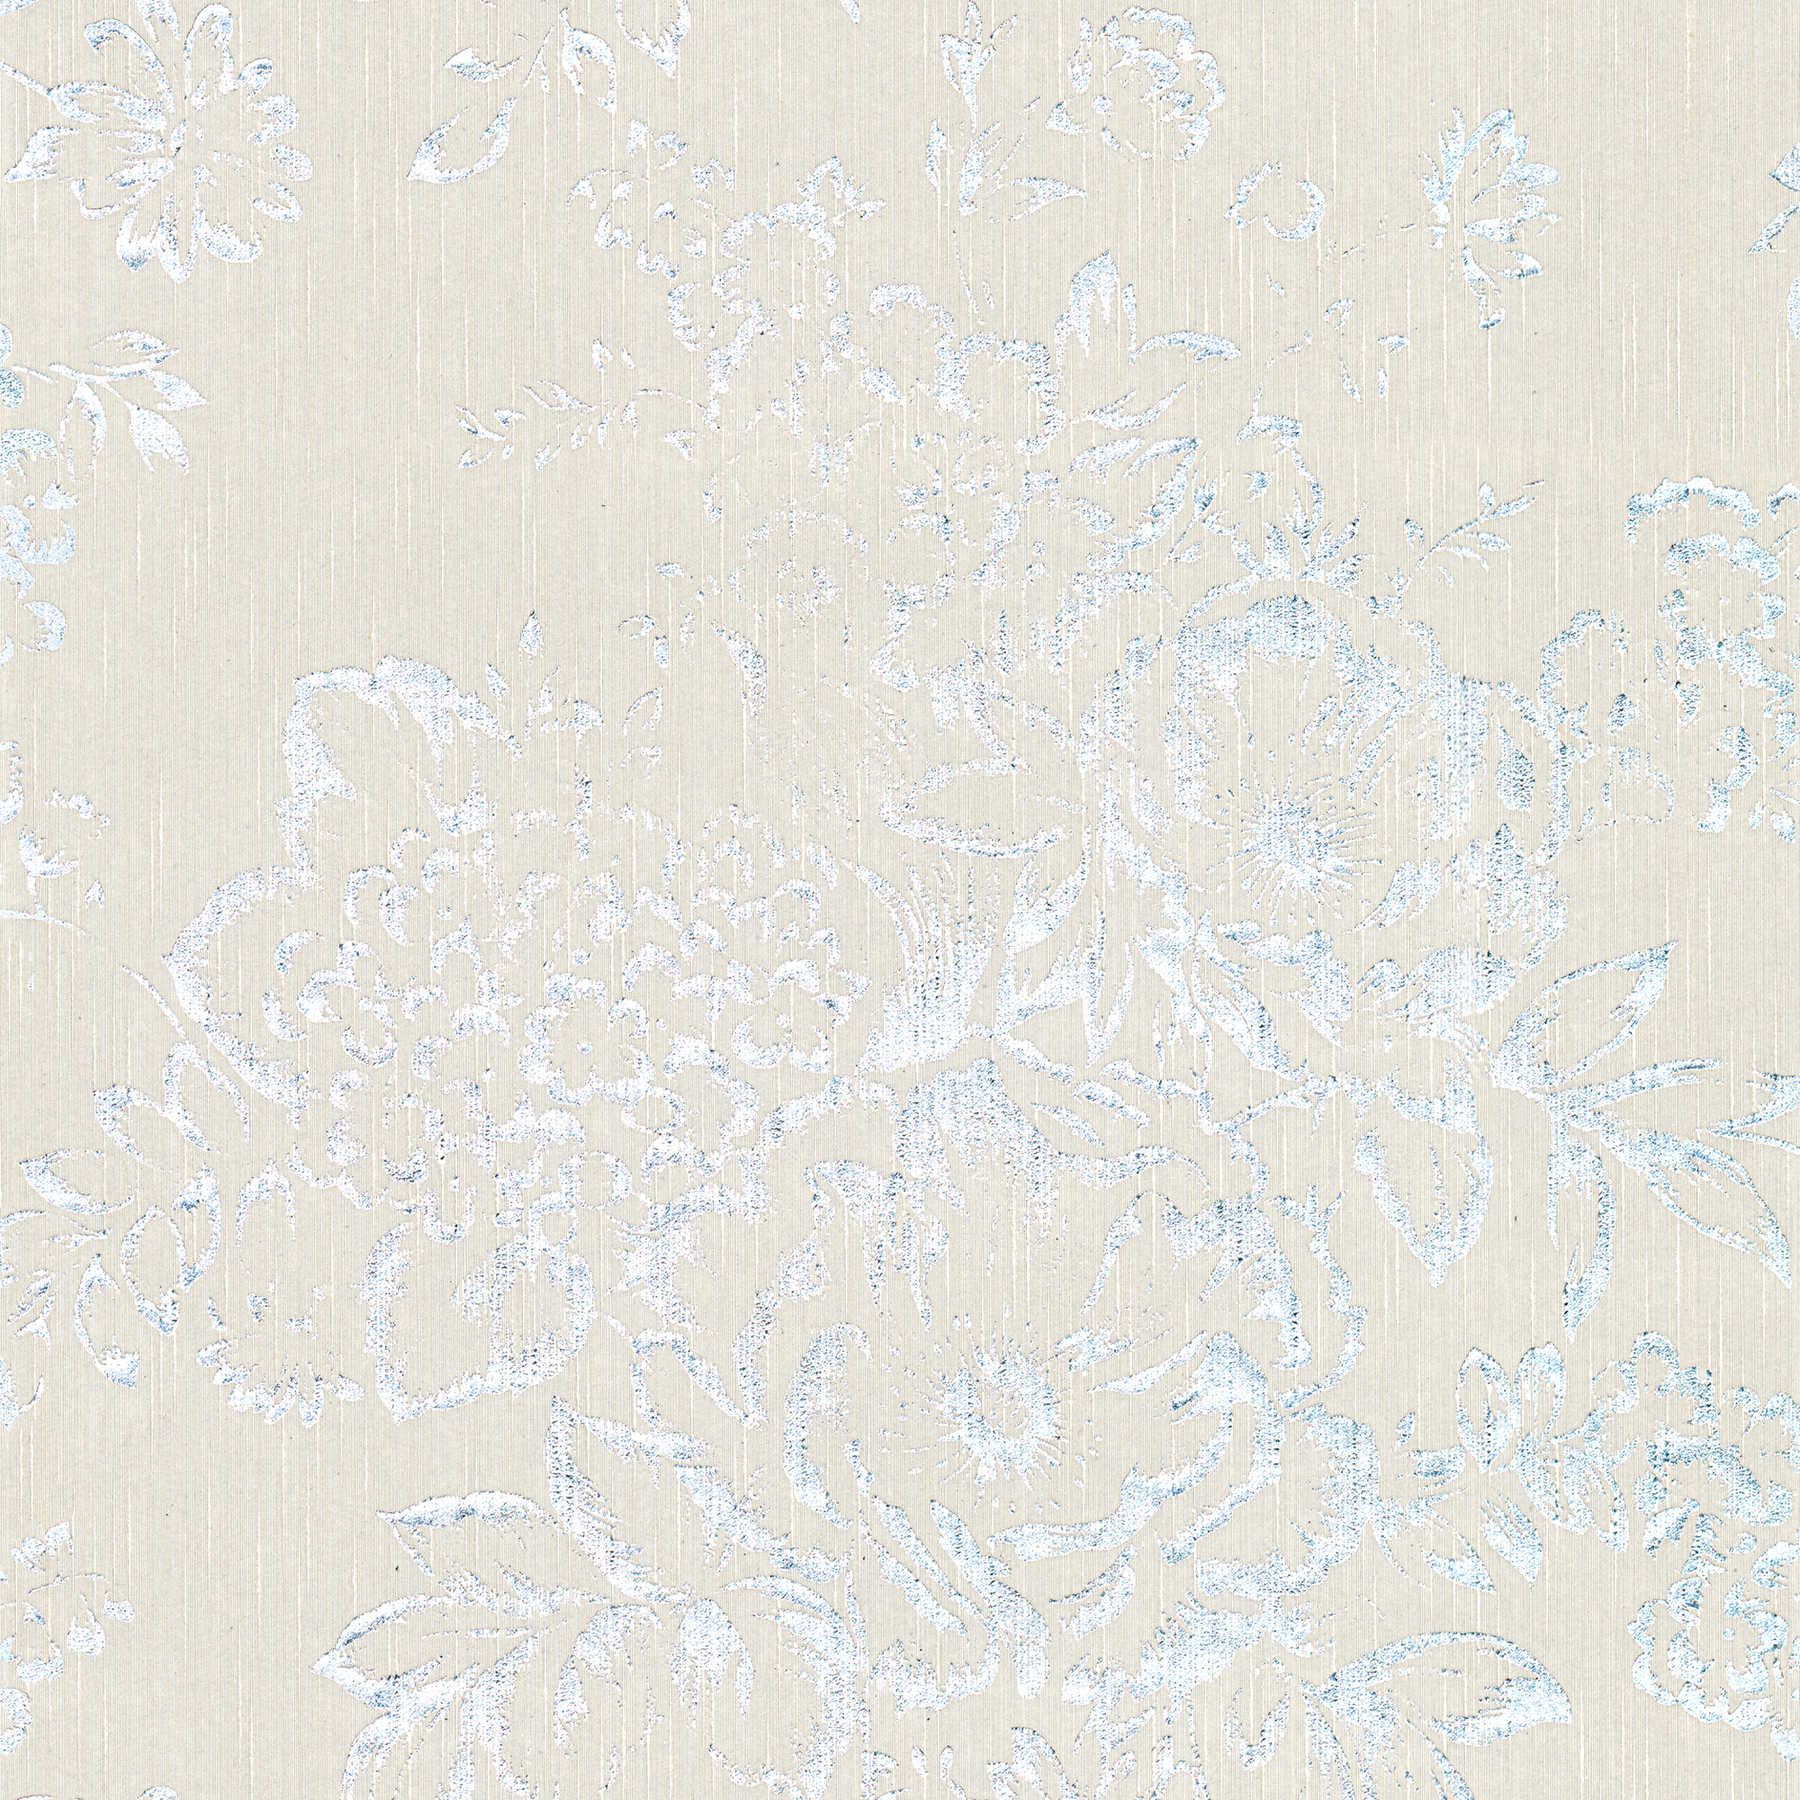 Papier peint structuré avec motif floral argenté - argent, gris
